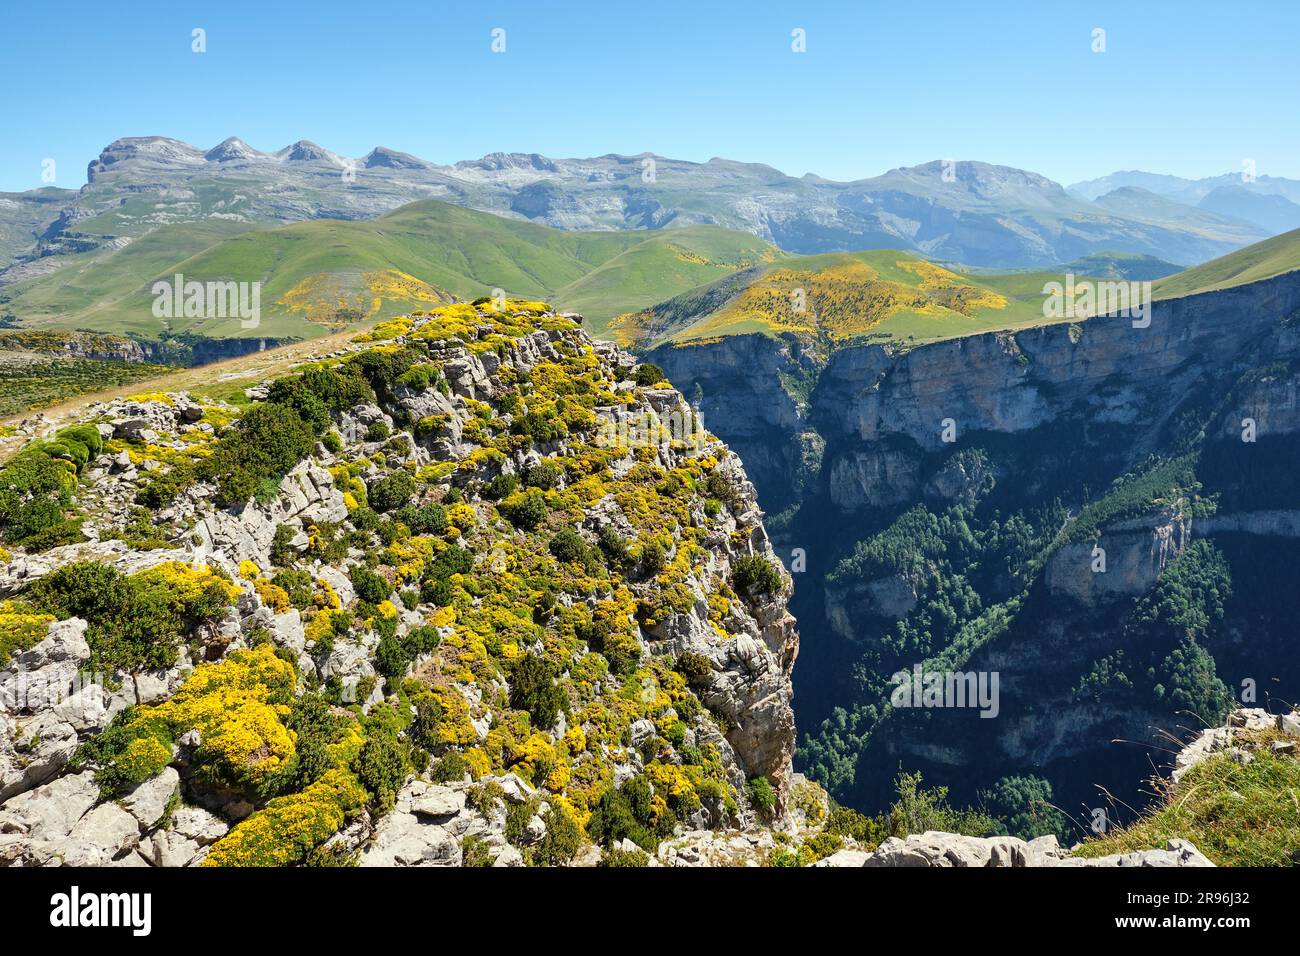 La catena montuosa del Monte Perdido e il Canyon de Anisclo nei Pirenei Foto Stock